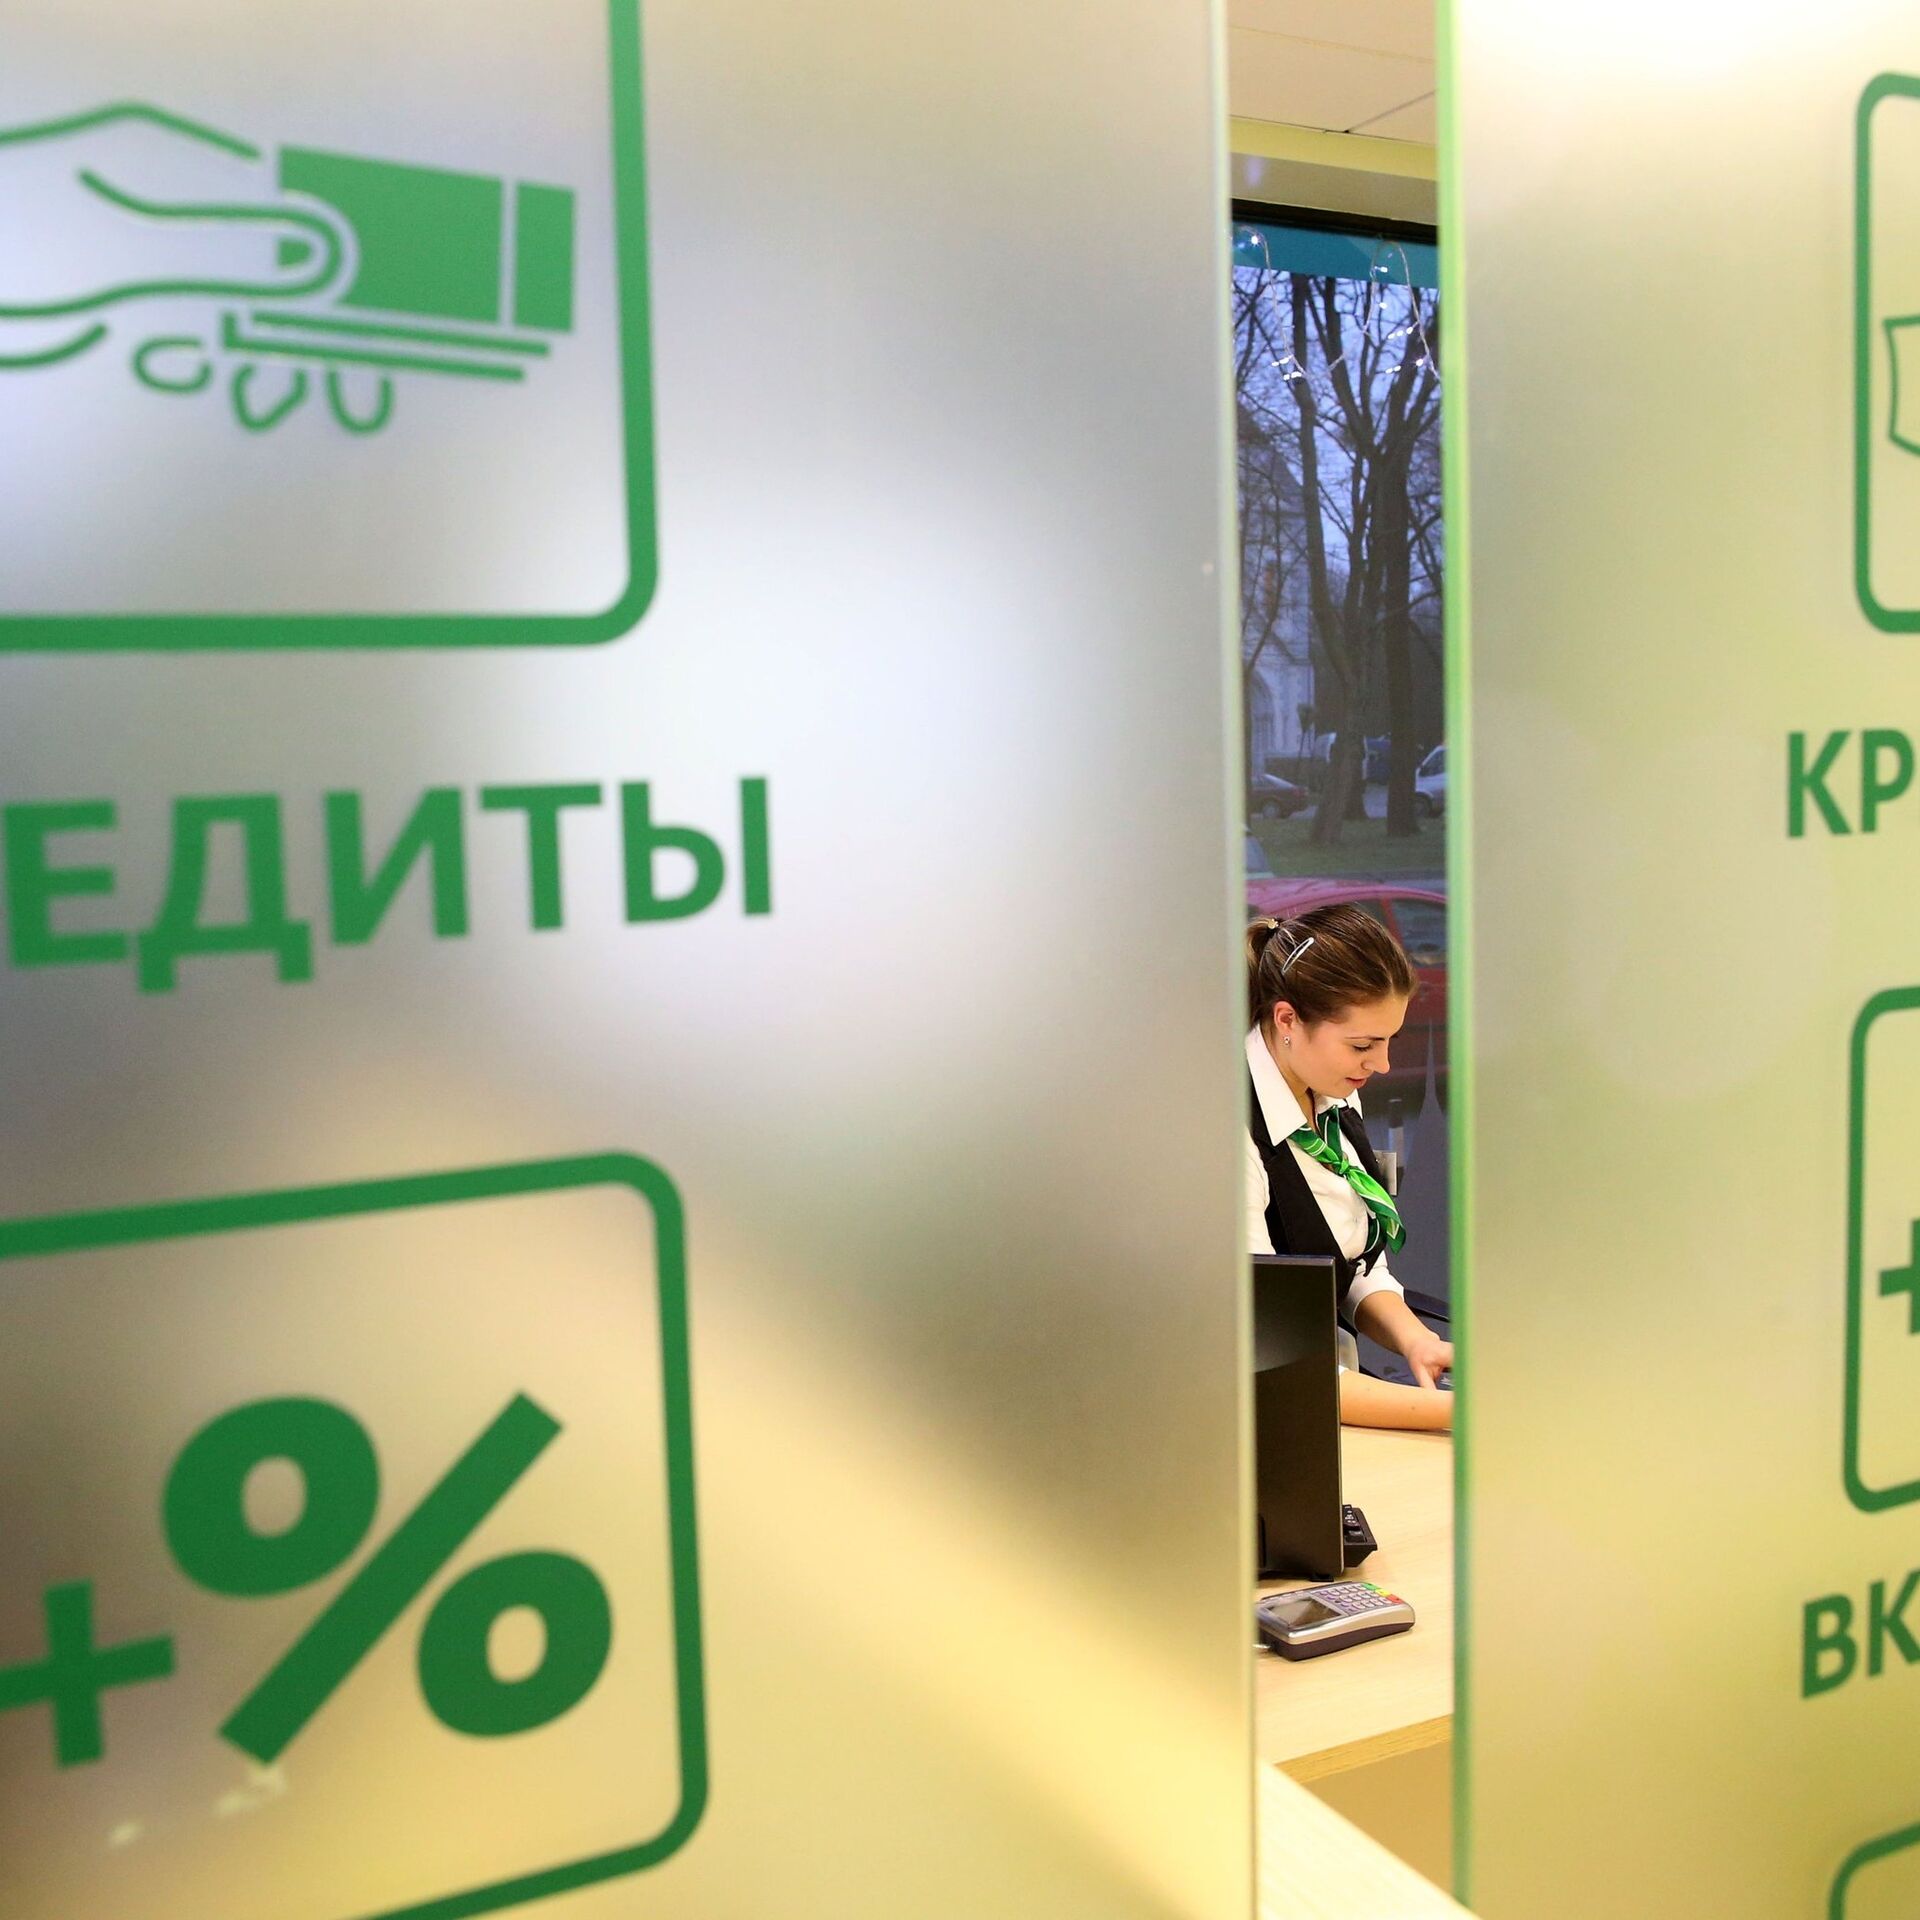 Банк россии может выдать кредит